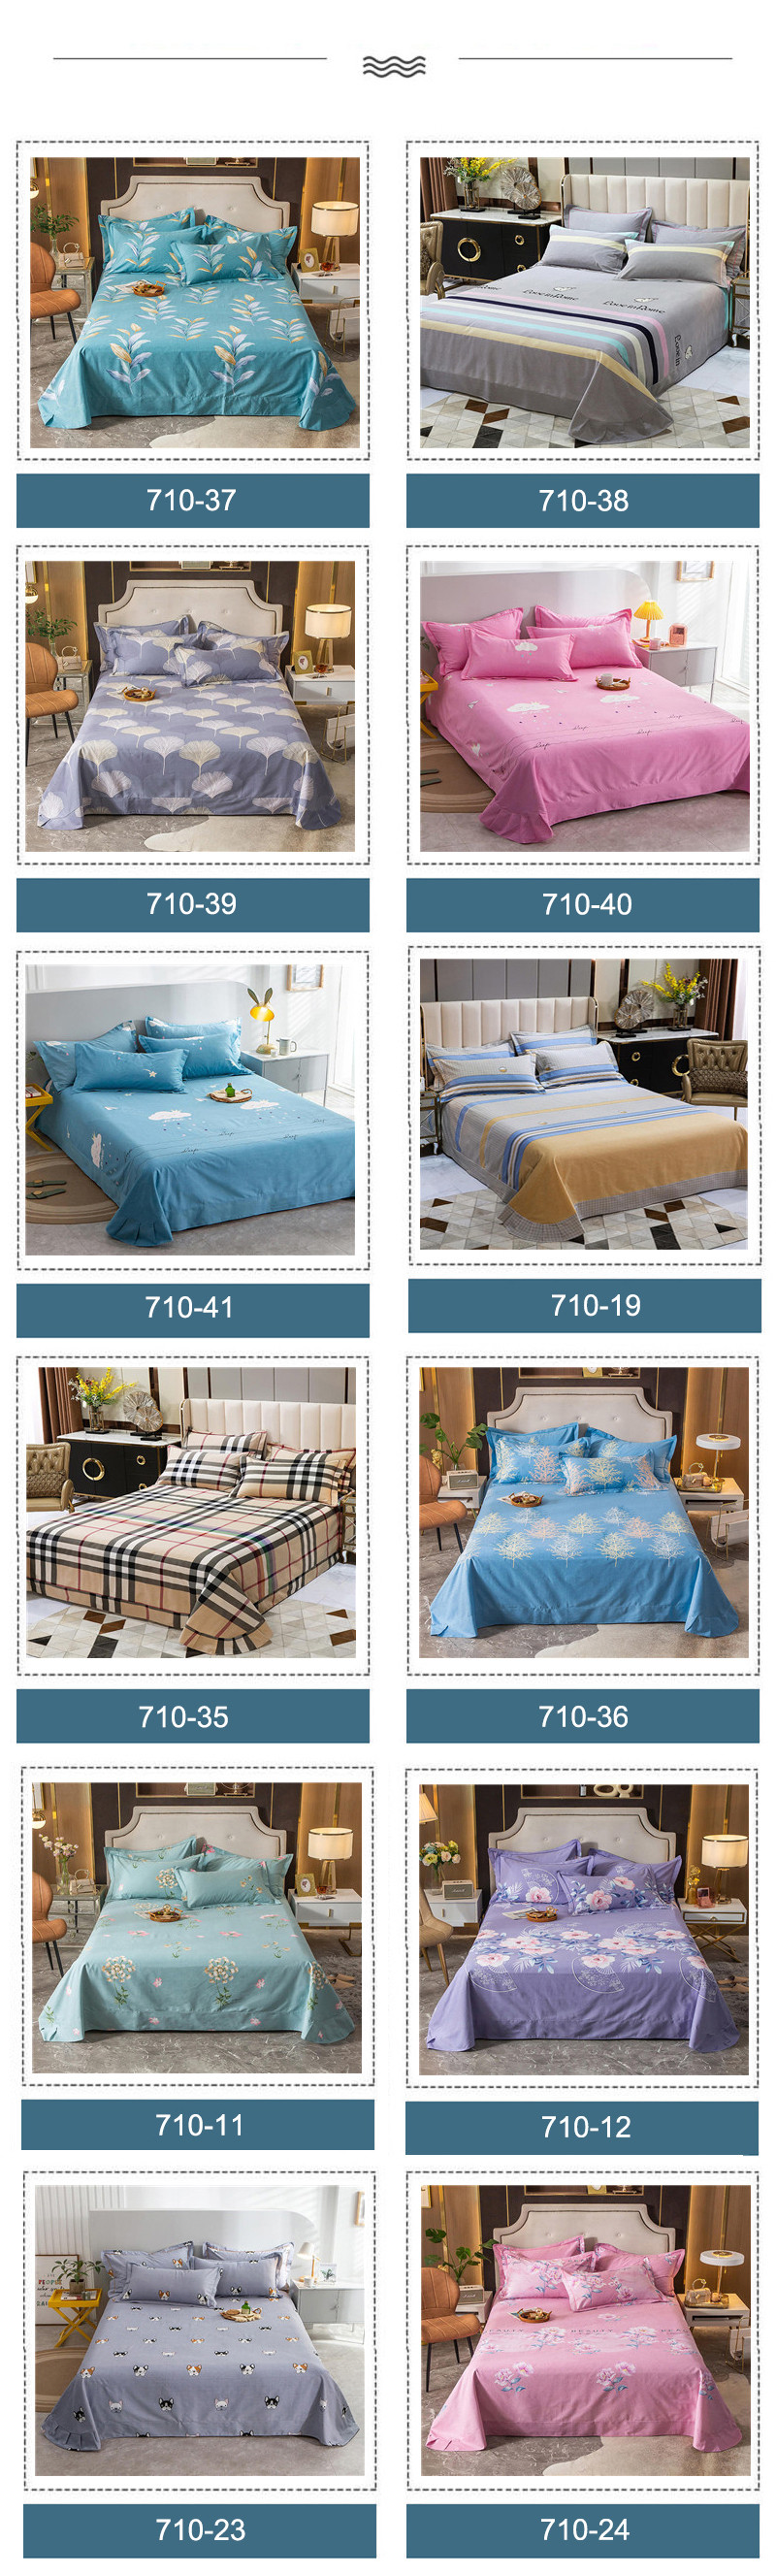 Home Textile Gingham Design Sheet Set